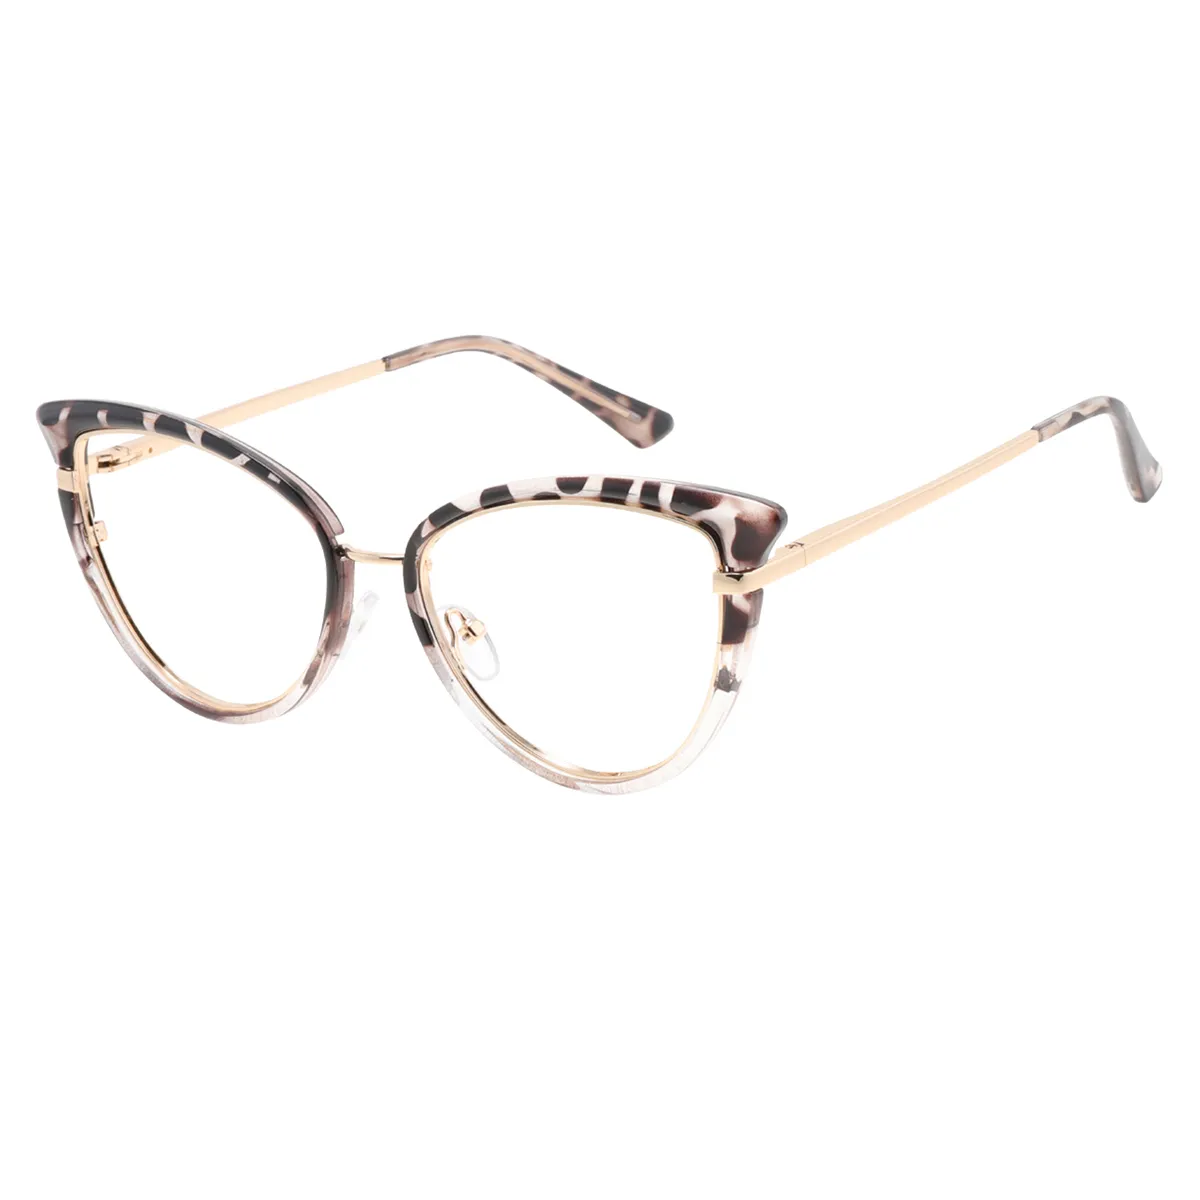 Griffin - Cat-eye Tortoiseshell Glasses for Women